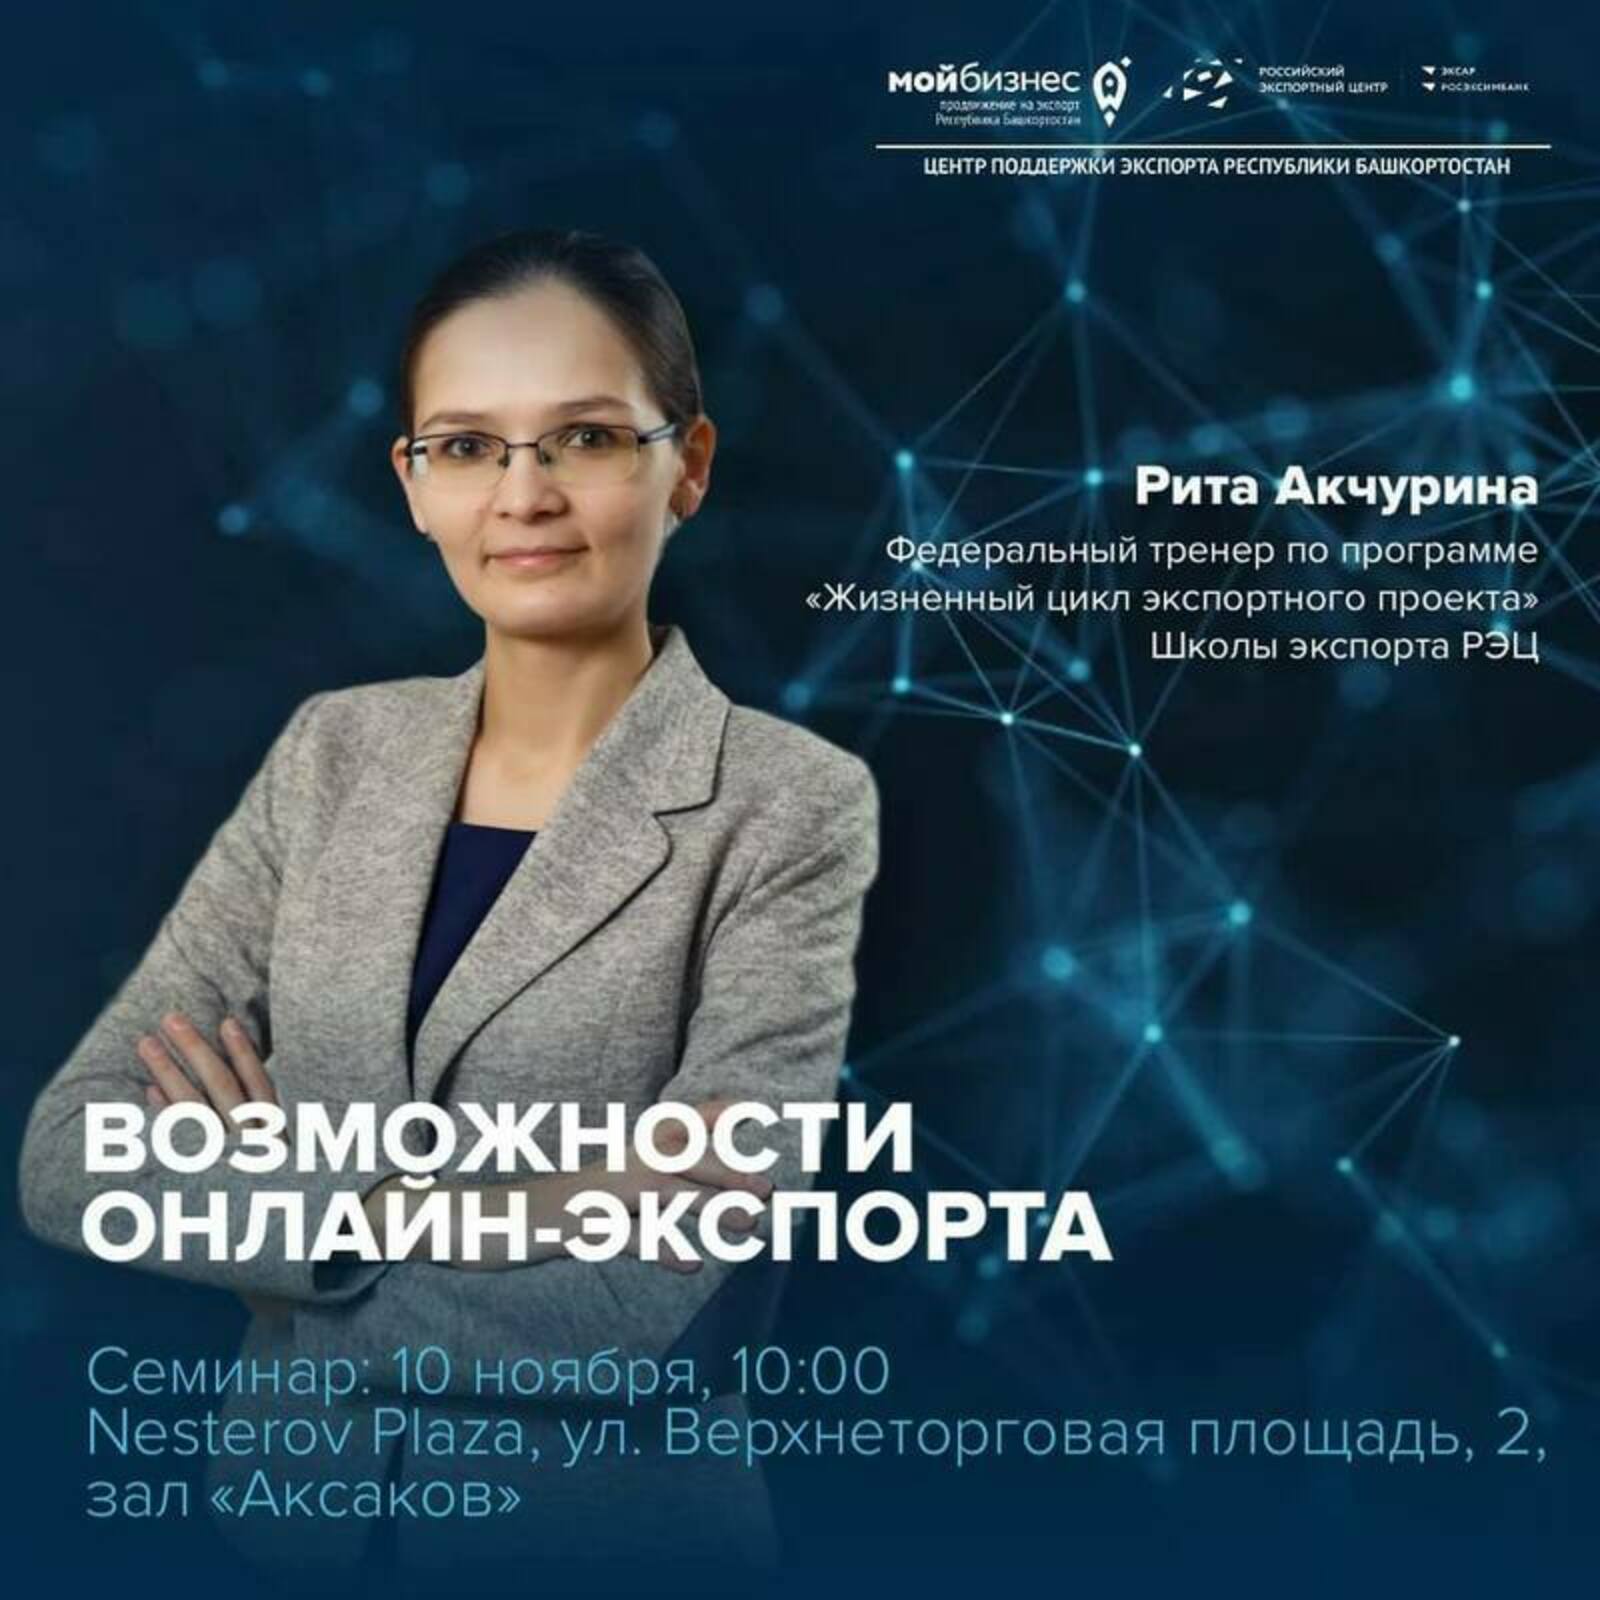 Приглашаем предпринимателей Башкортостана принять участие в семинаре «Возможности онлайн-экспорта»